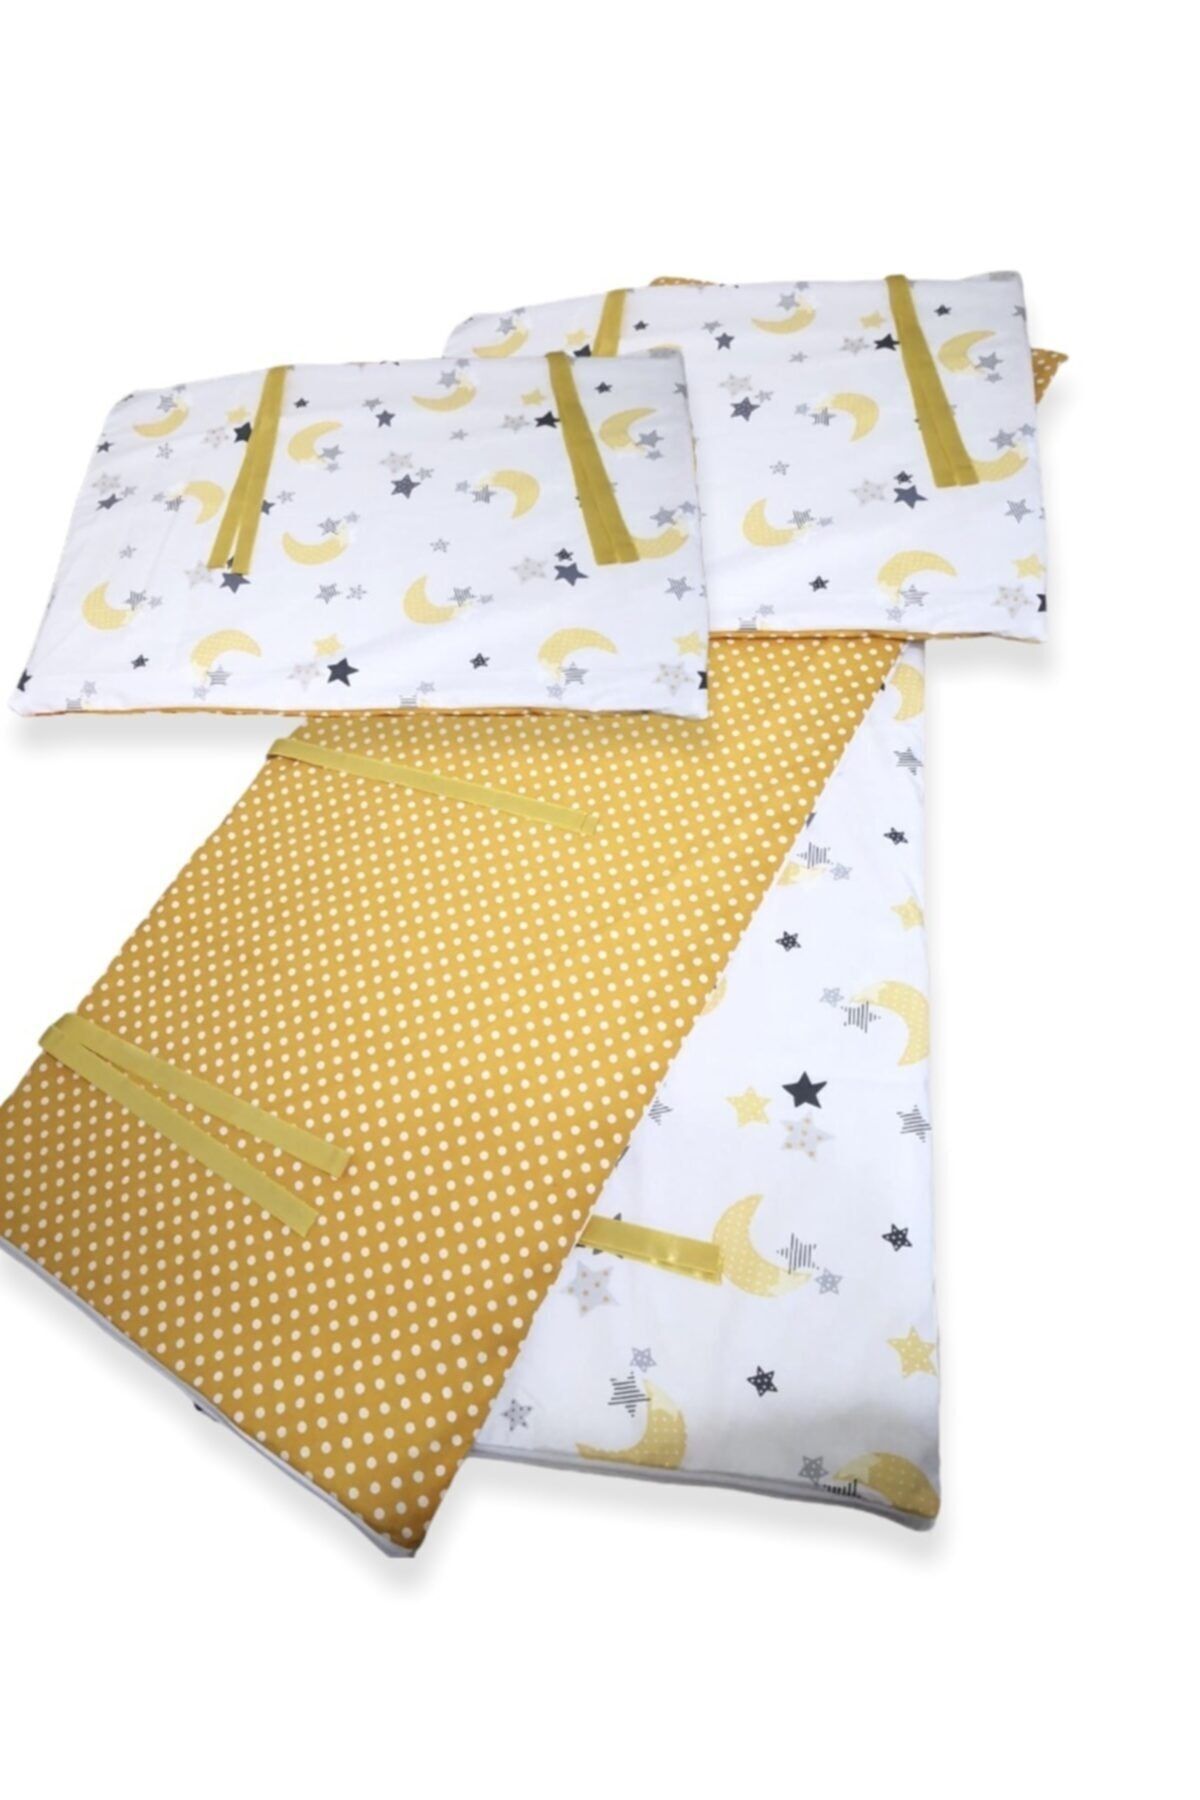 Bebek Özel Bebek Çocuk Beşik Kenar Koruma 100x200 Montessori Için (4 Parça) Sarı Puantiyeli